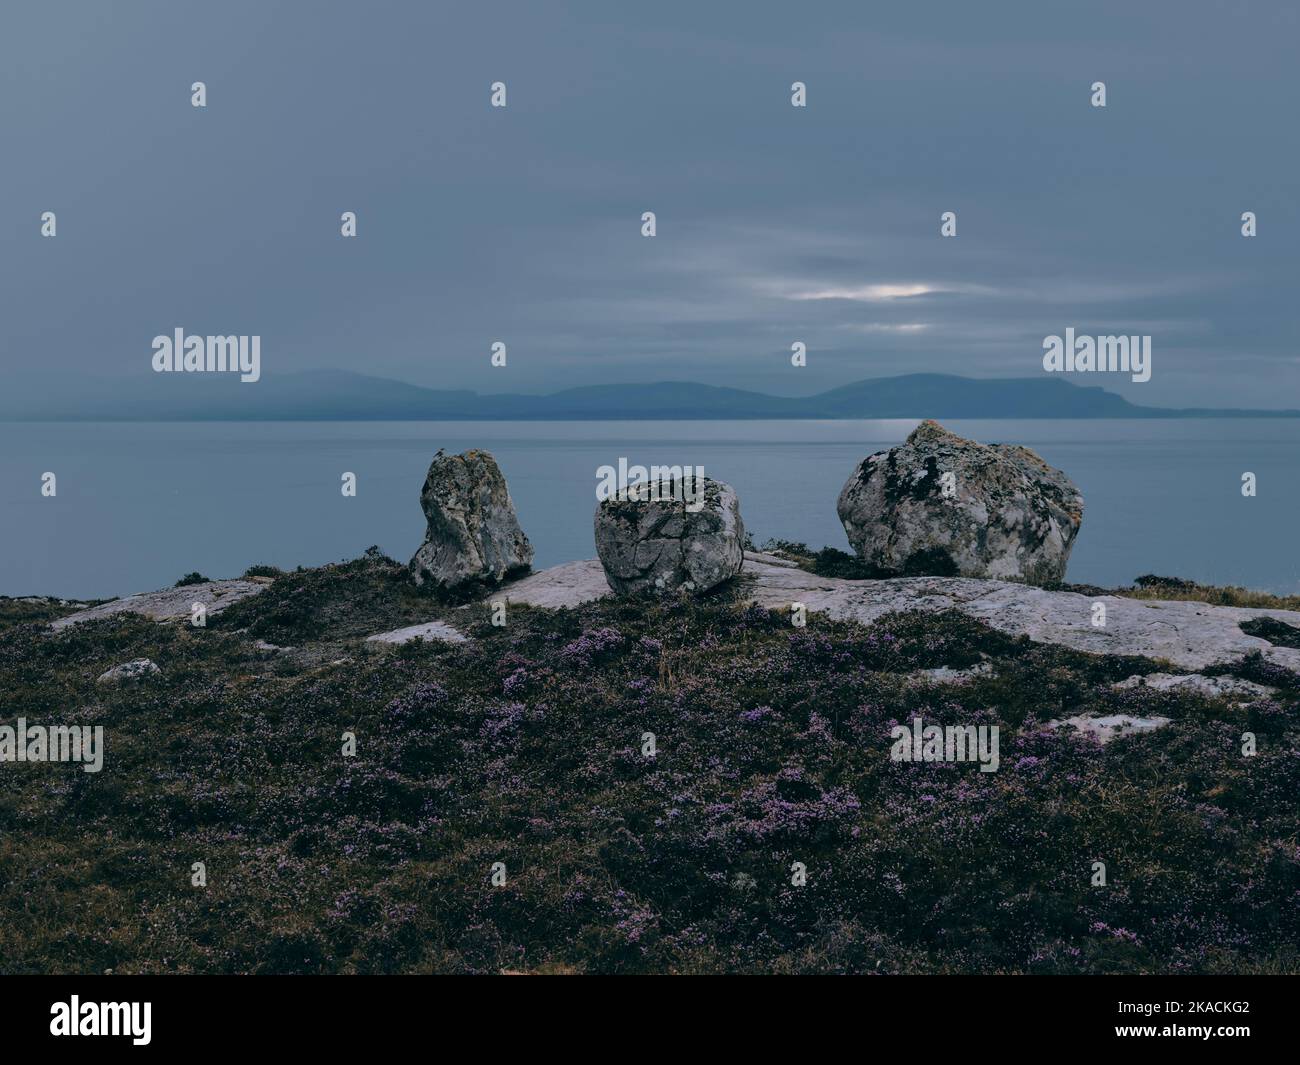 Une vue lointaine sur l'île de Skye et le paysage de roche et de bruyère de la région sud de l'Erradale près de Gairloch sur la côte ouest de l'Écosse au Royaume-Uni Banque D'Images